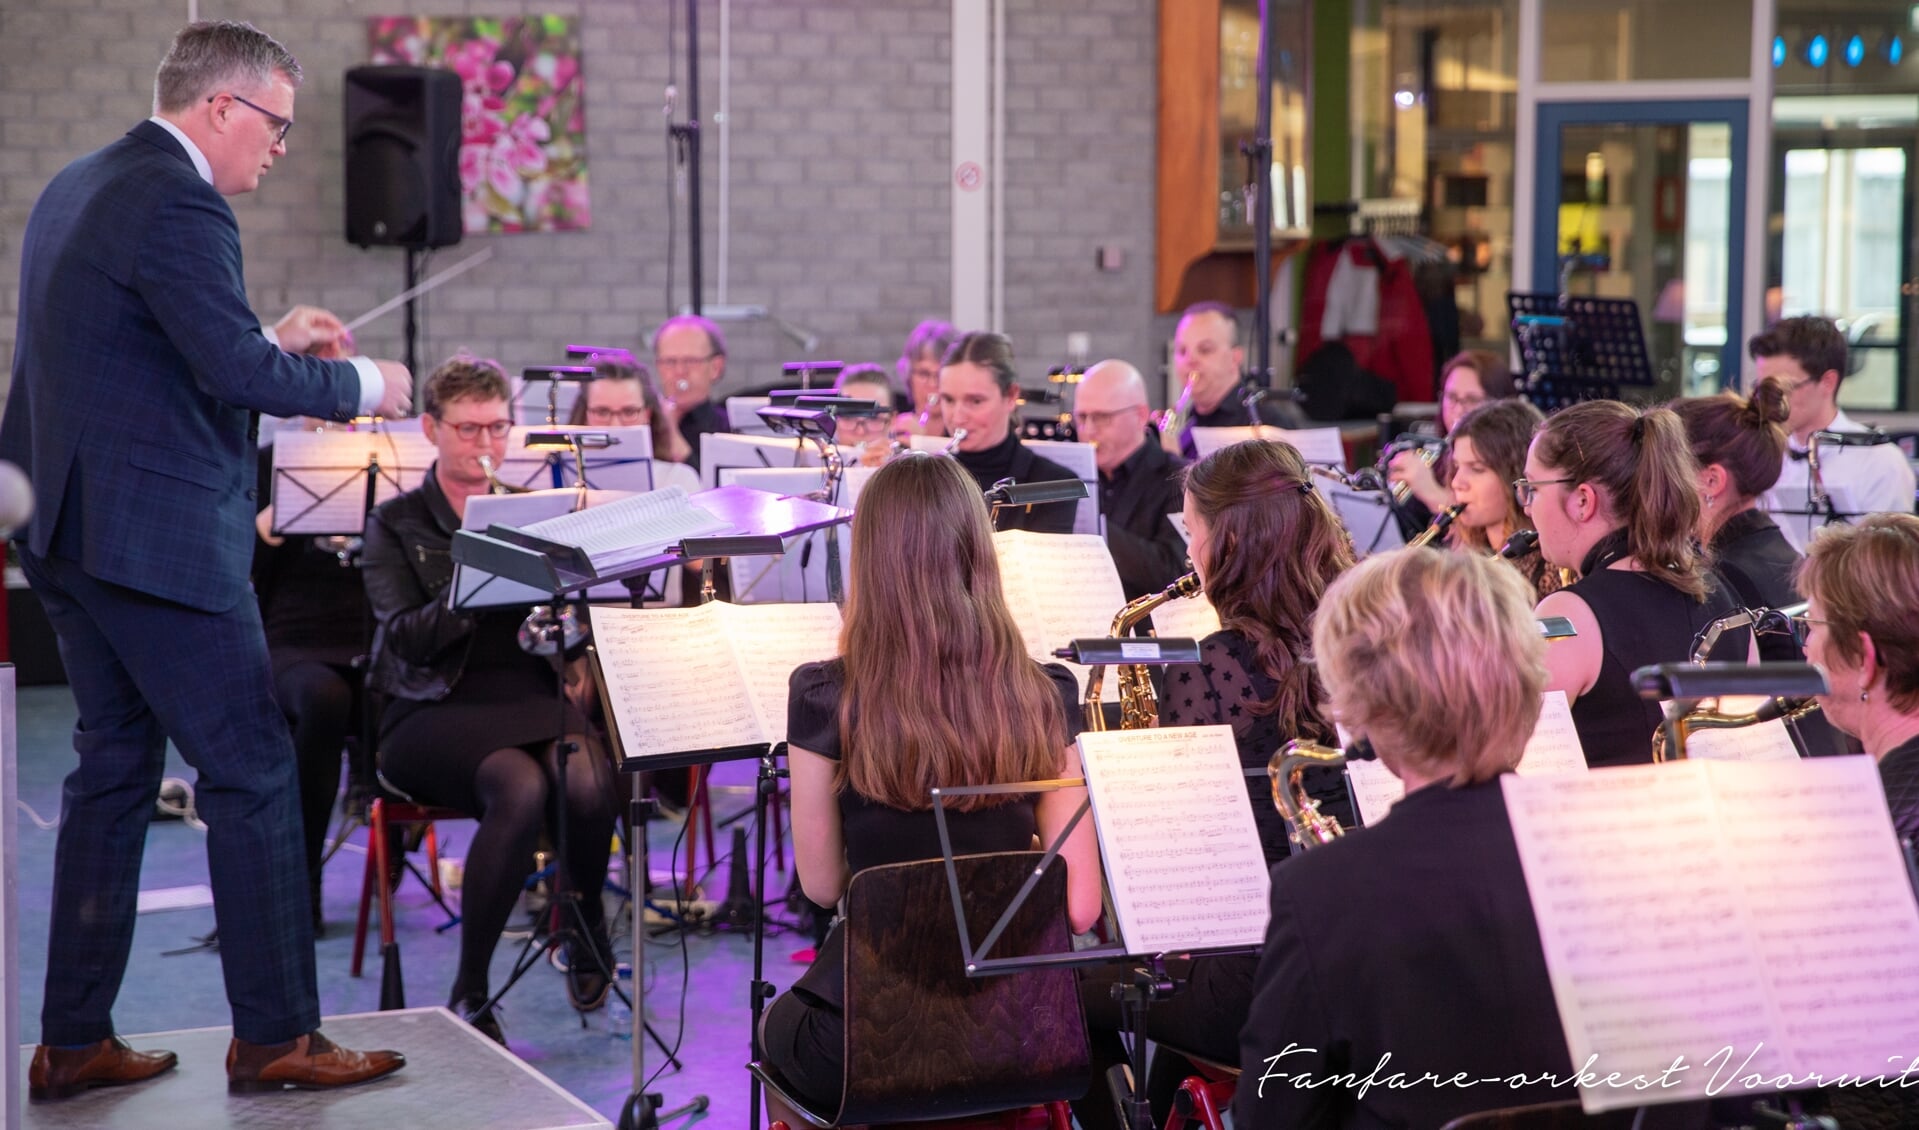 Fanfare-orkest Vooruit is een modern en dynamisch Fanfare-orkest dat vanaf augustus 2015 onder leiding staat van dirigent Gert van der Weide.